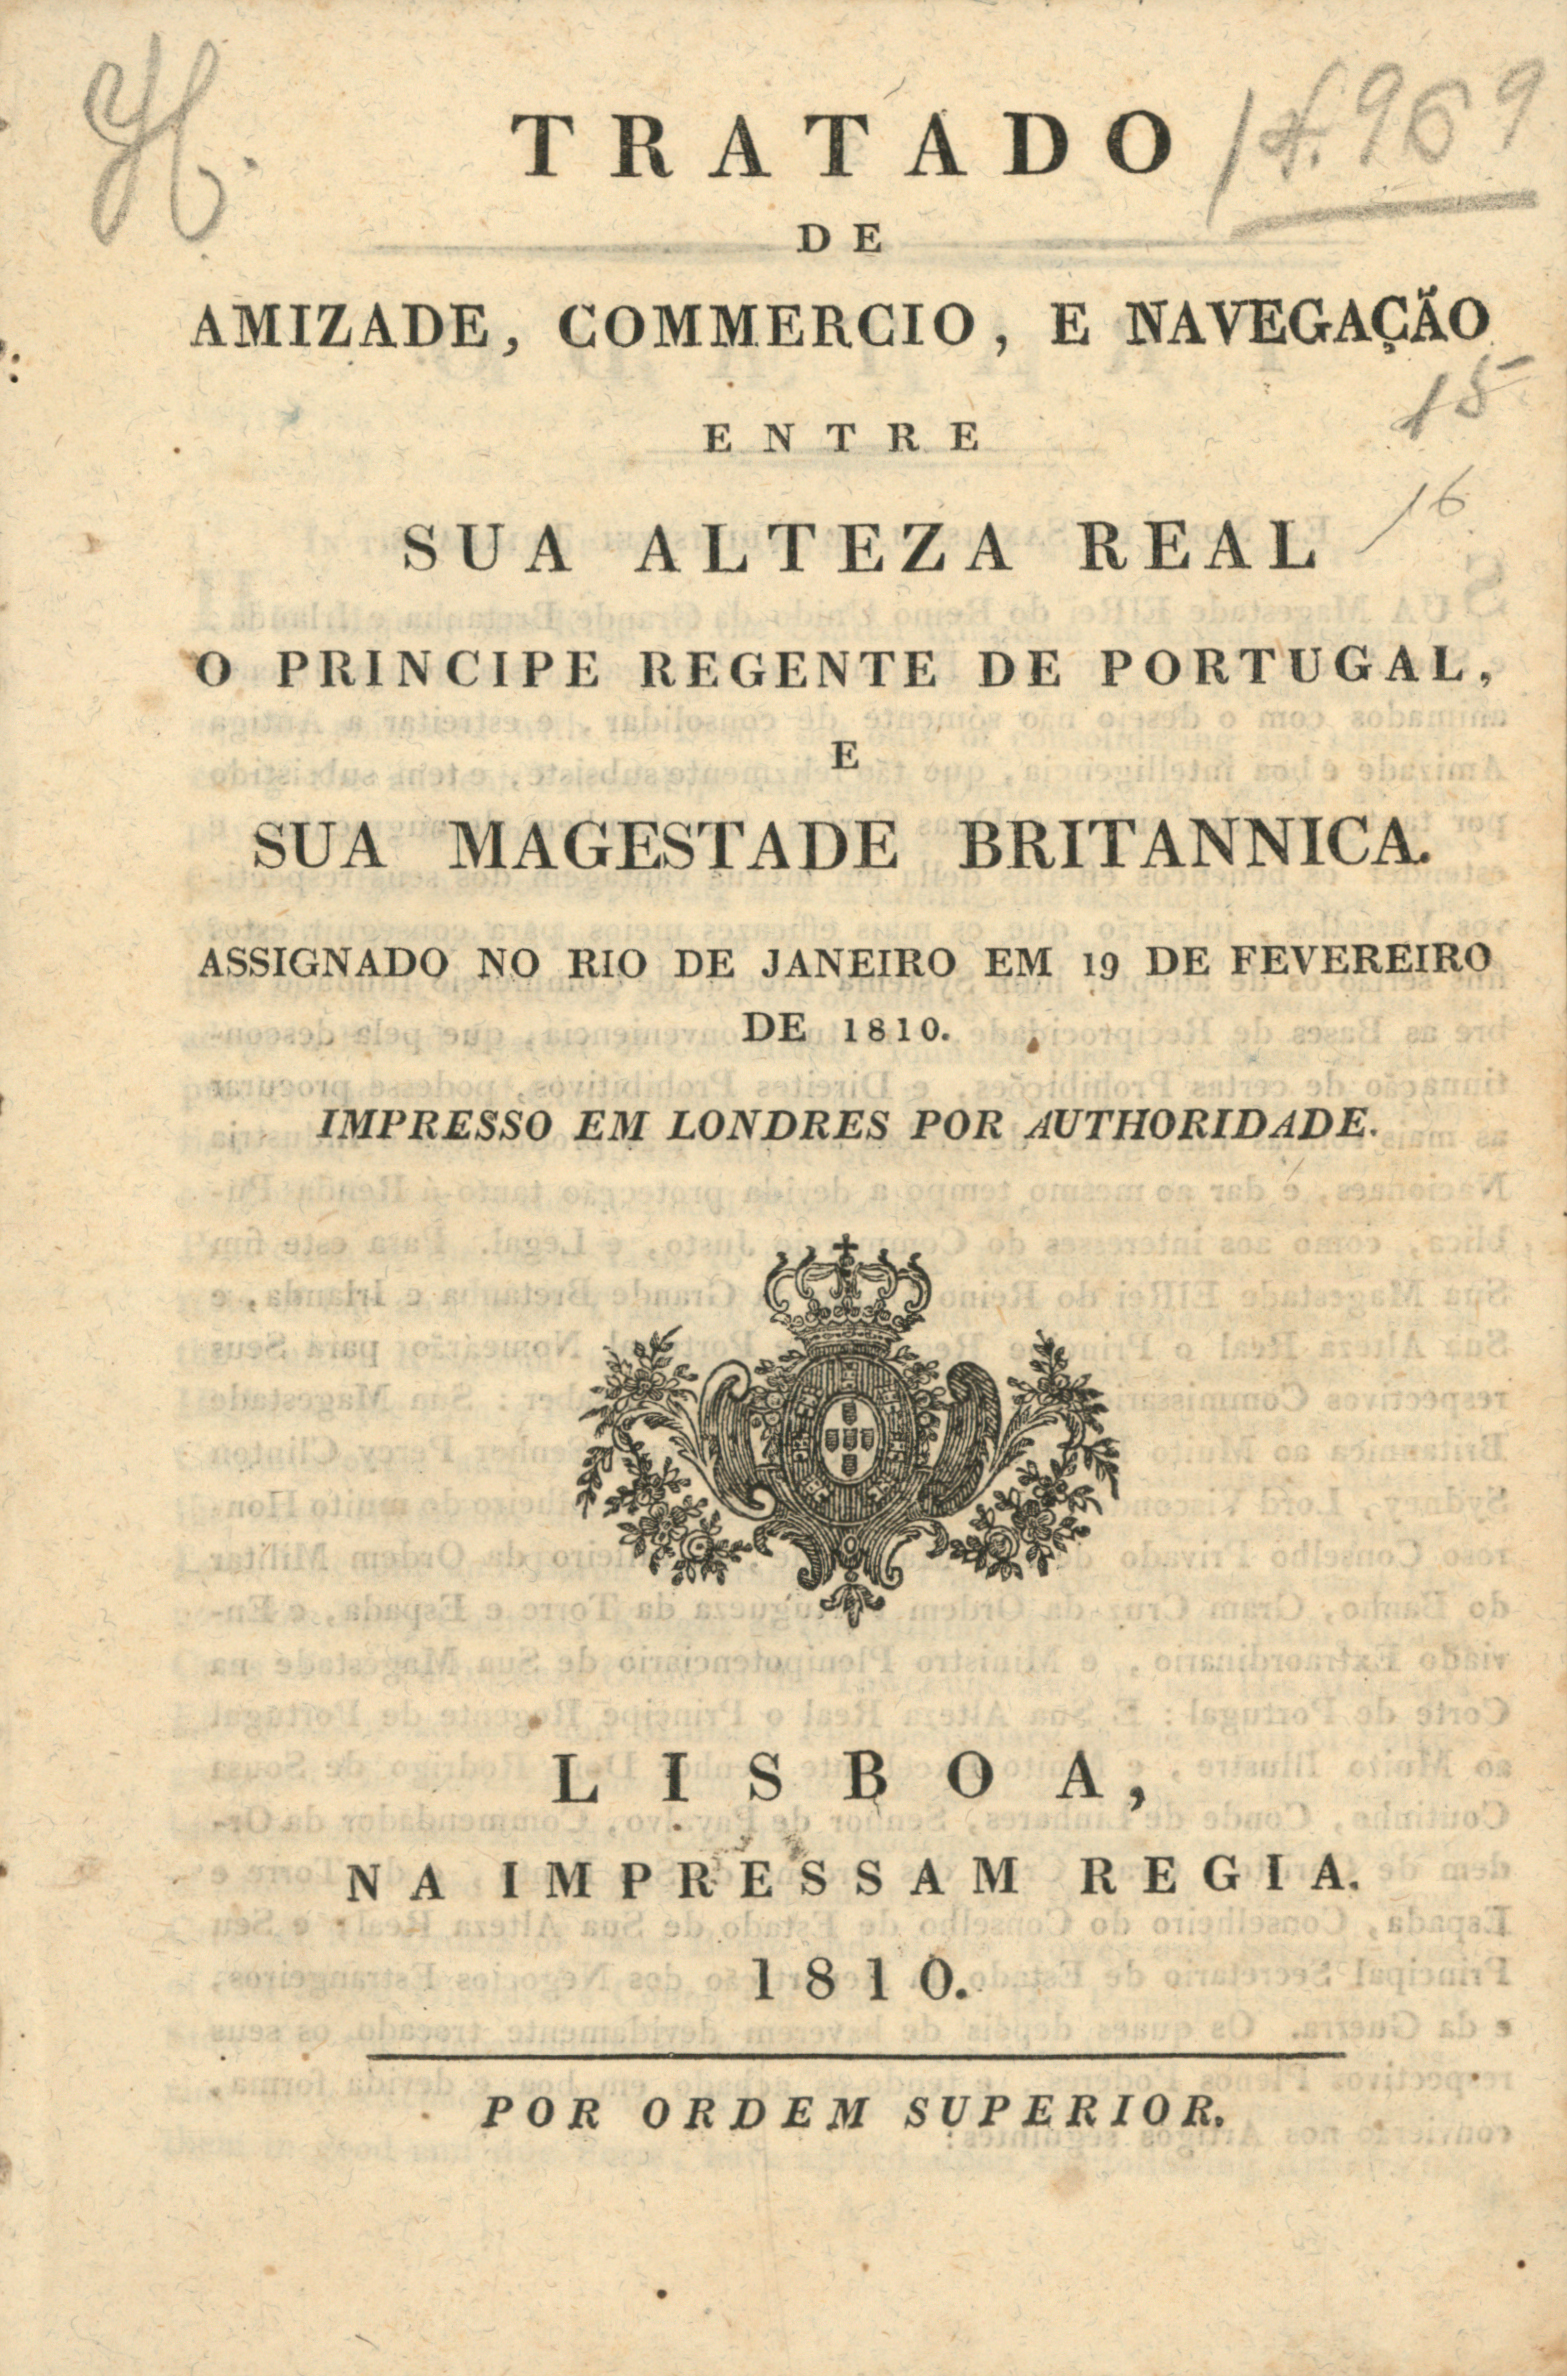 Tratado de amizade entre Portugal e o Reino Unido, 